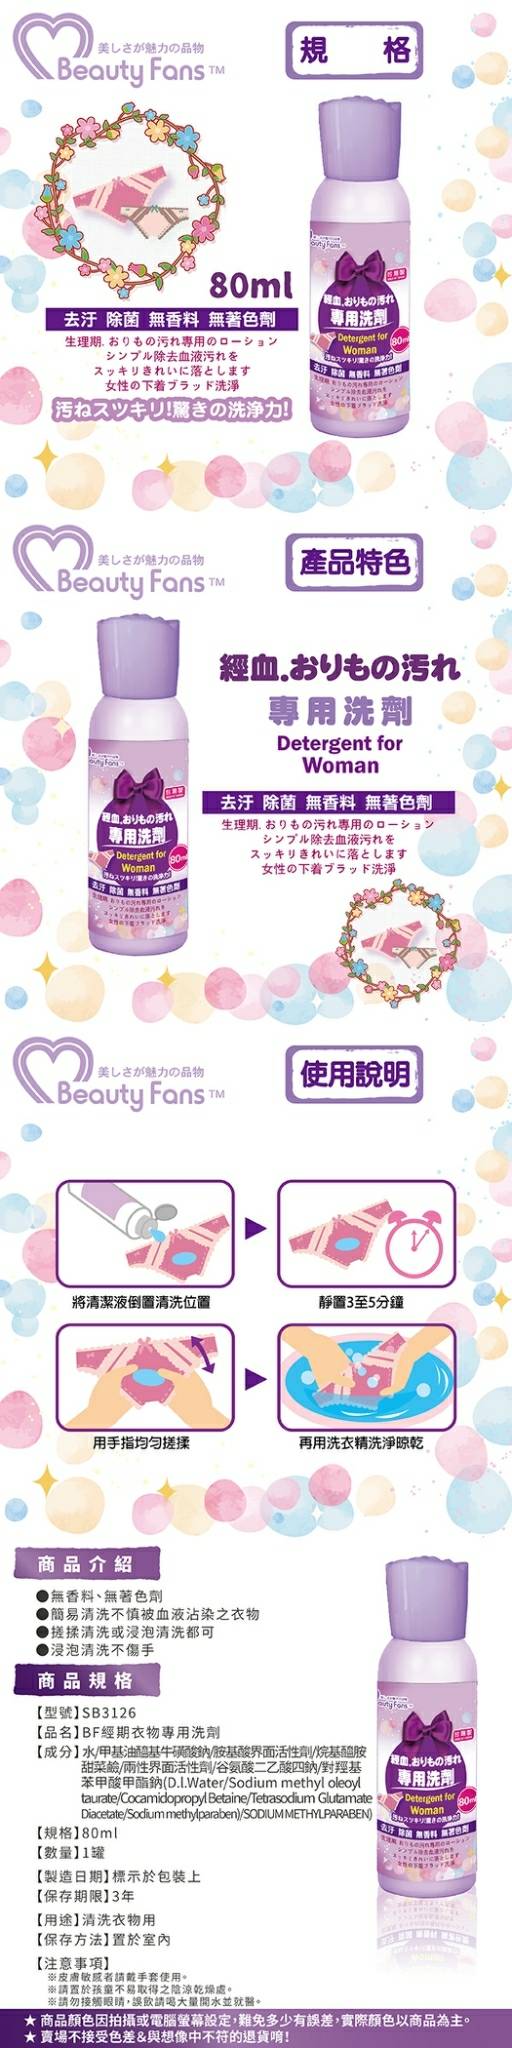 臺灣 洗衣精 beauty fans 臺灣